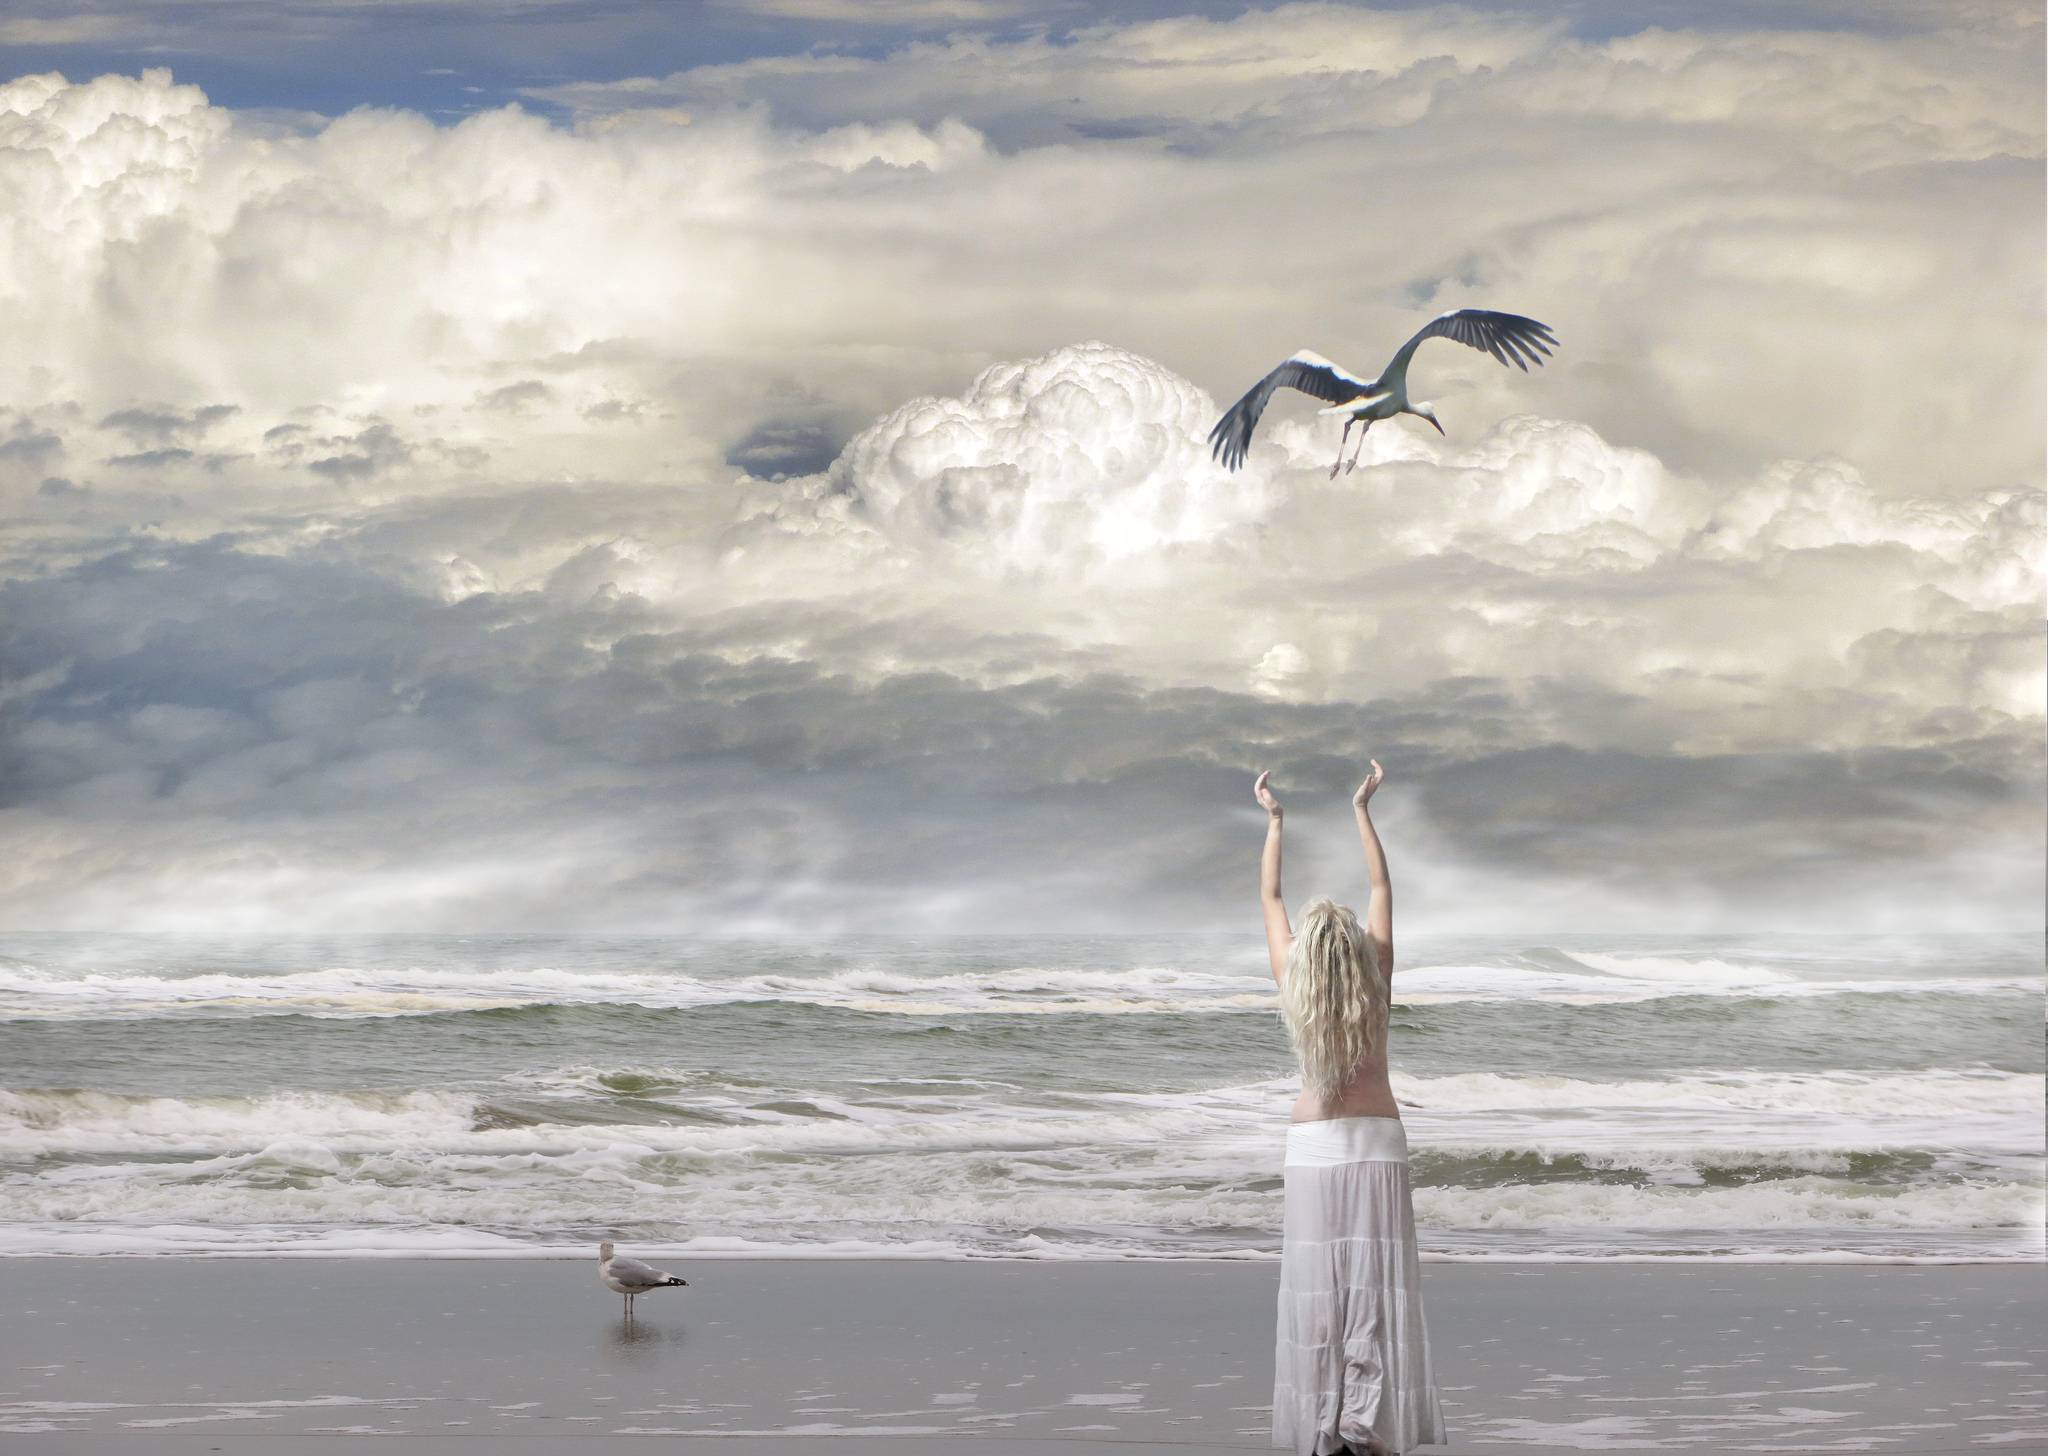 Больше воздуха больше жизни. Море птицы девушка. Море и небо девушка. Девушка море птицы ветер.